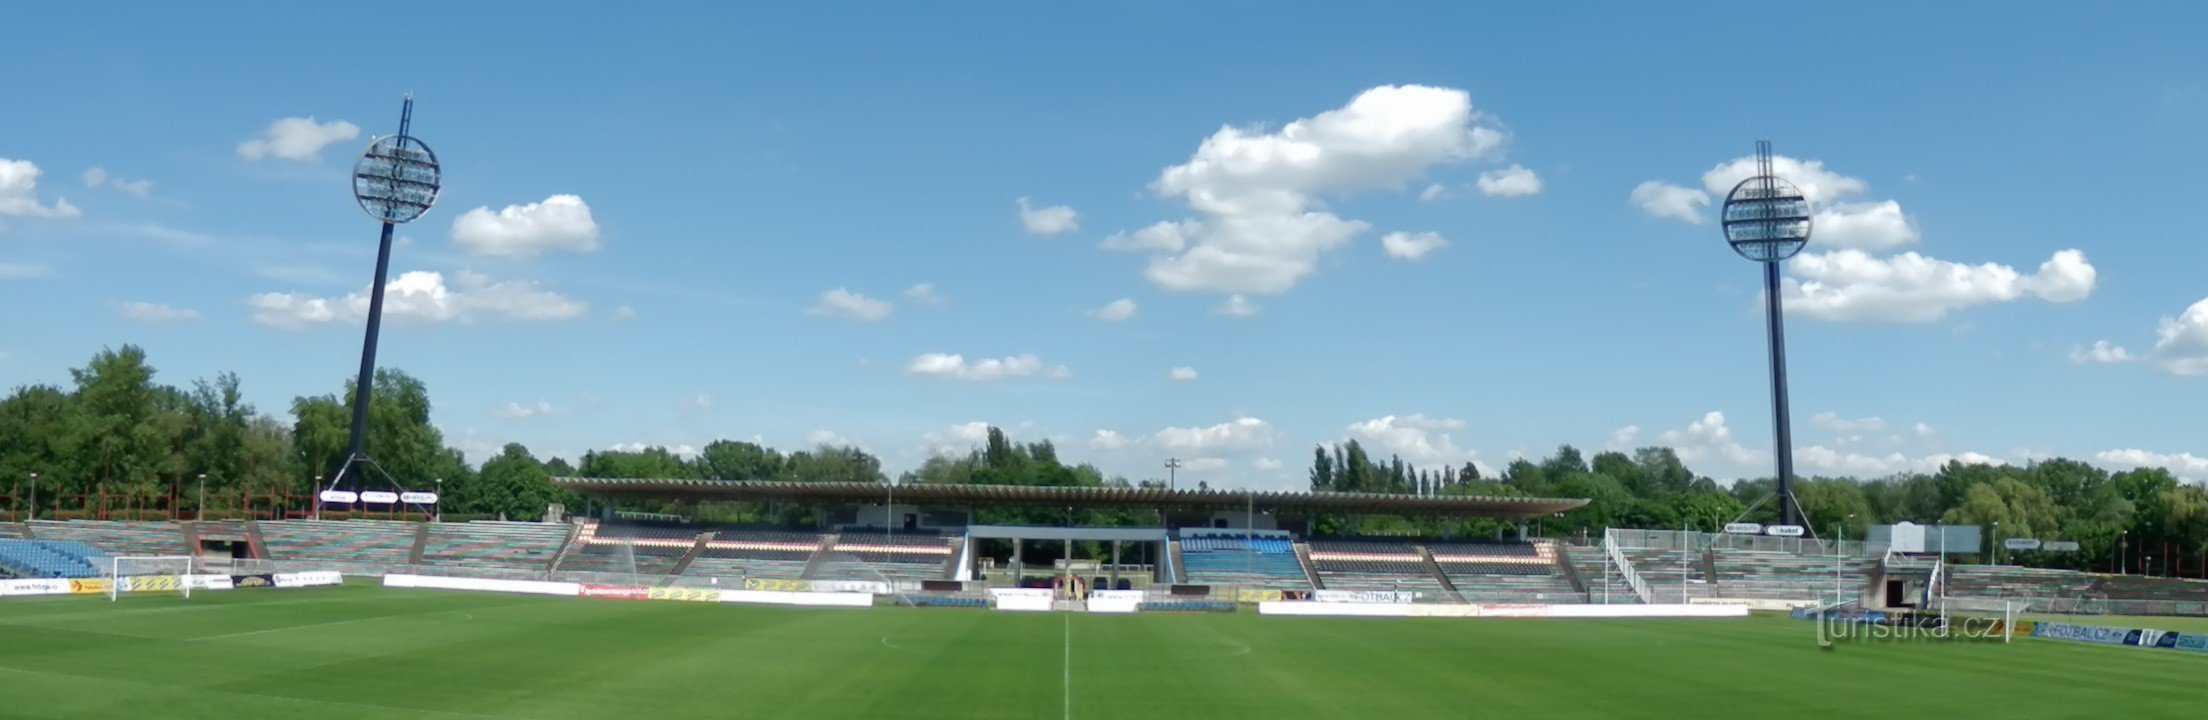 Pogled na igrišče z glavne jugozahodne tribune